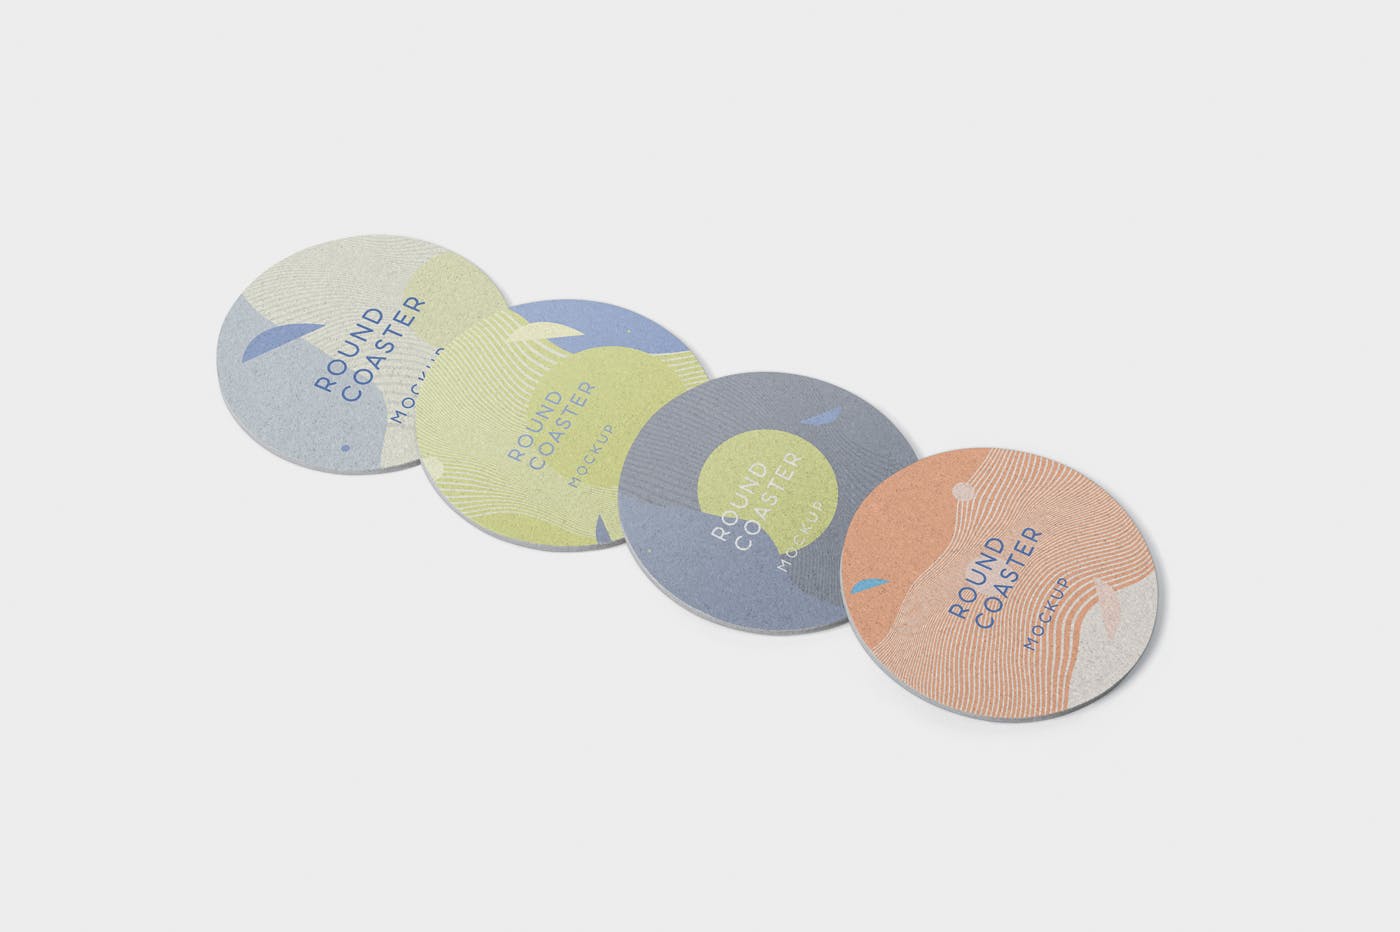 圆形杯垫图案设计效果图素材中国精选 Round Coaster Mock-Up – Medium Size插图(2)